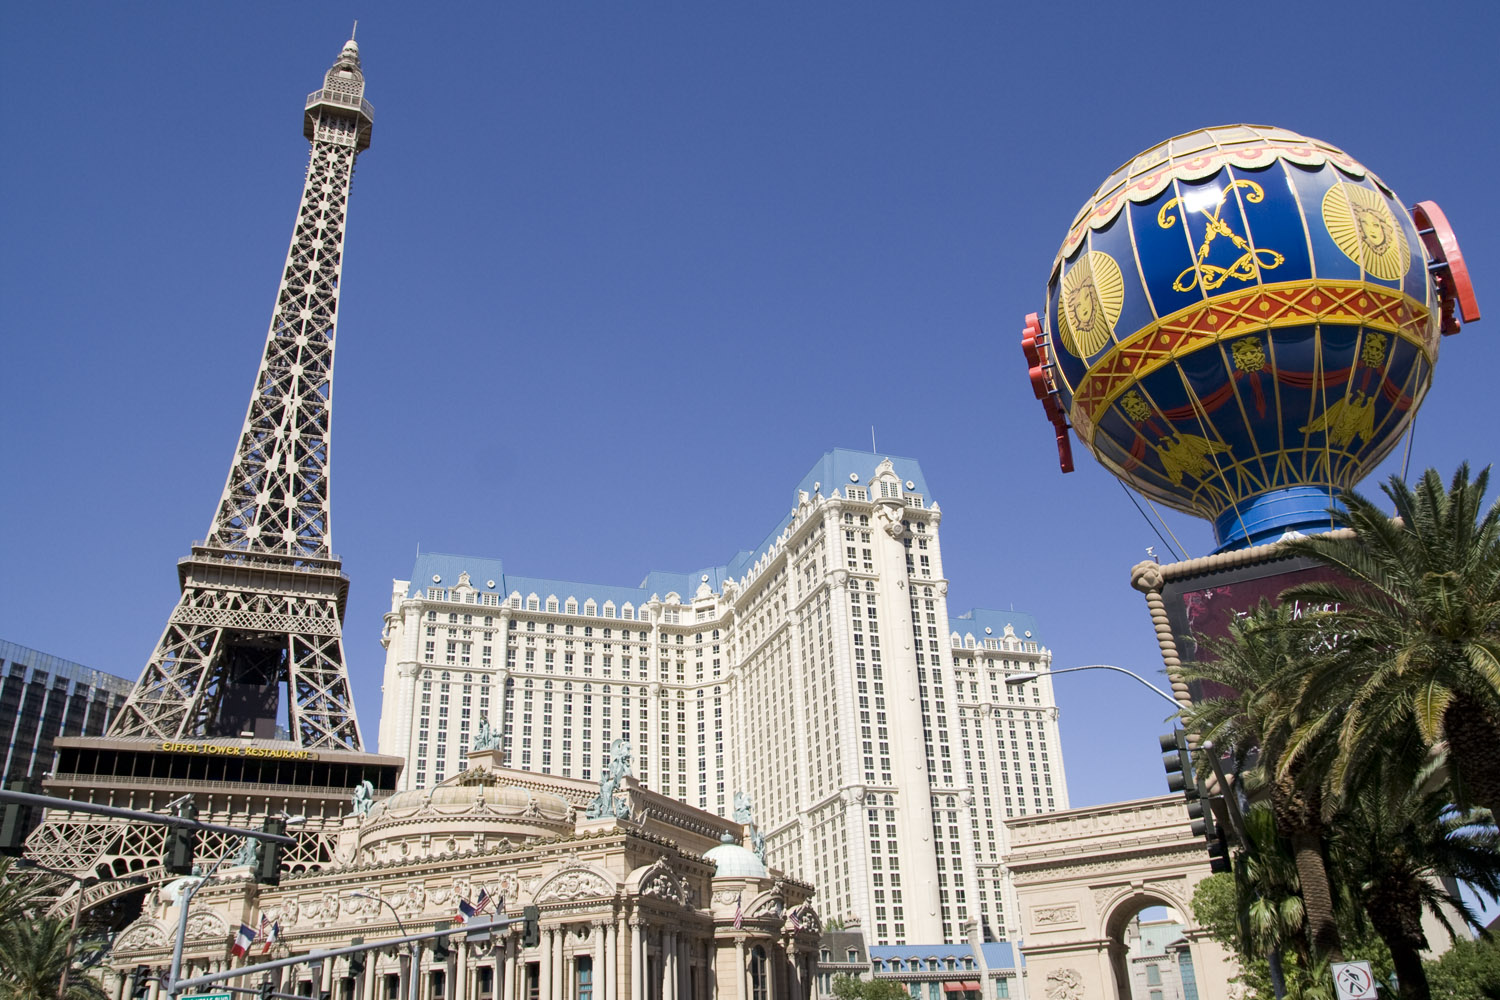 Vista general del hotel y casino París en Las Vegas